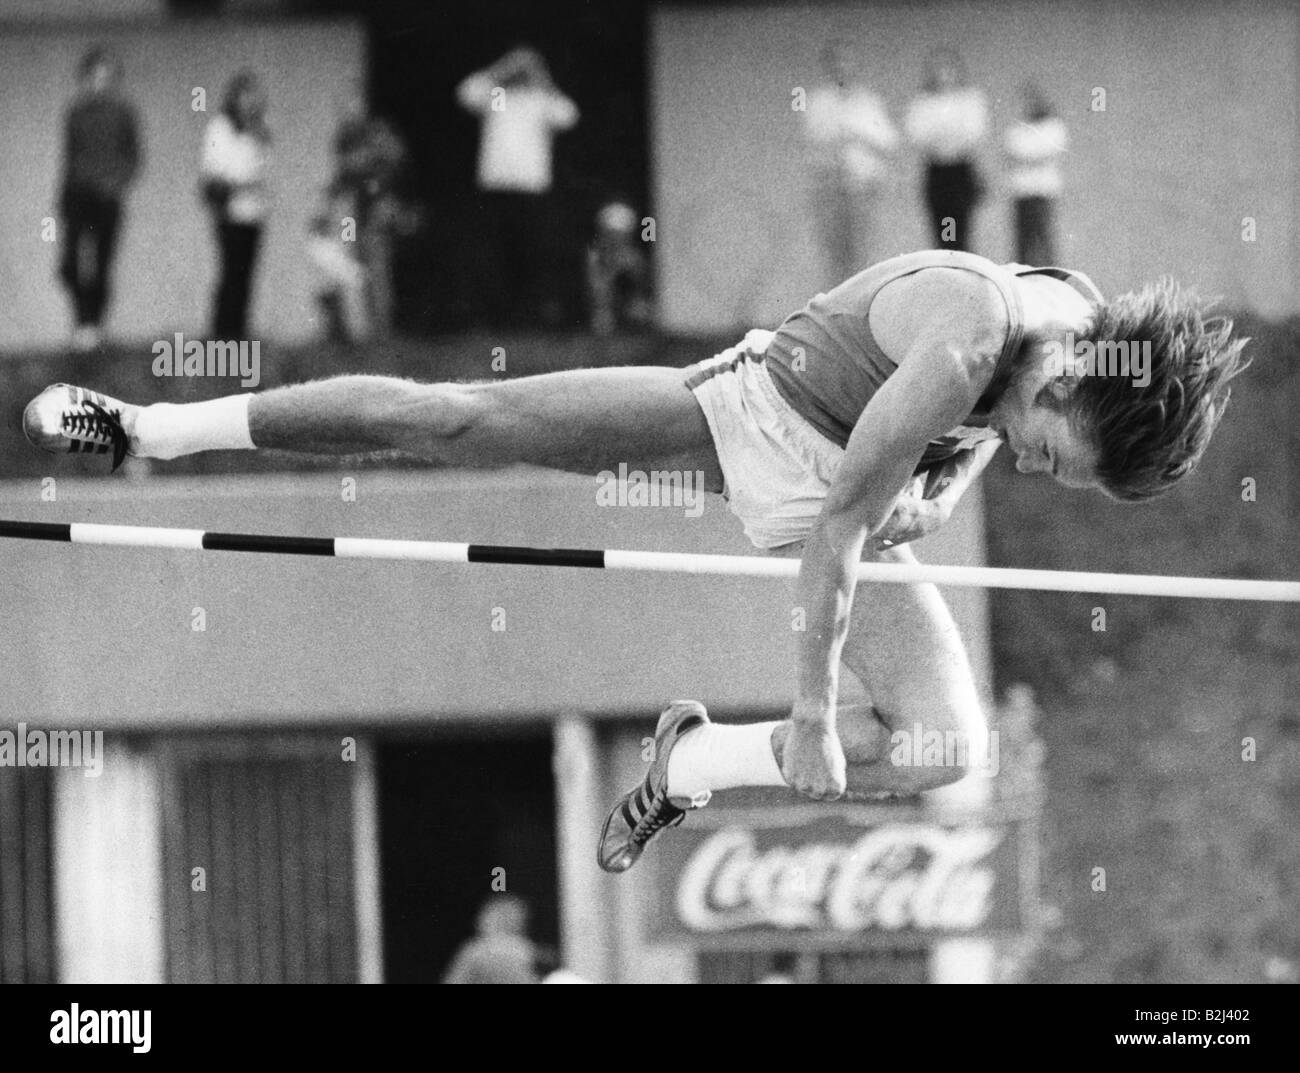 Zacharias, Thomas, deutscher Leichtathlet (Hochsprung), bei einem Wettkampf, in Mayen in der Eifel, Deutschland, Sprung: 2,20 Meter, 1970, Stockfoto